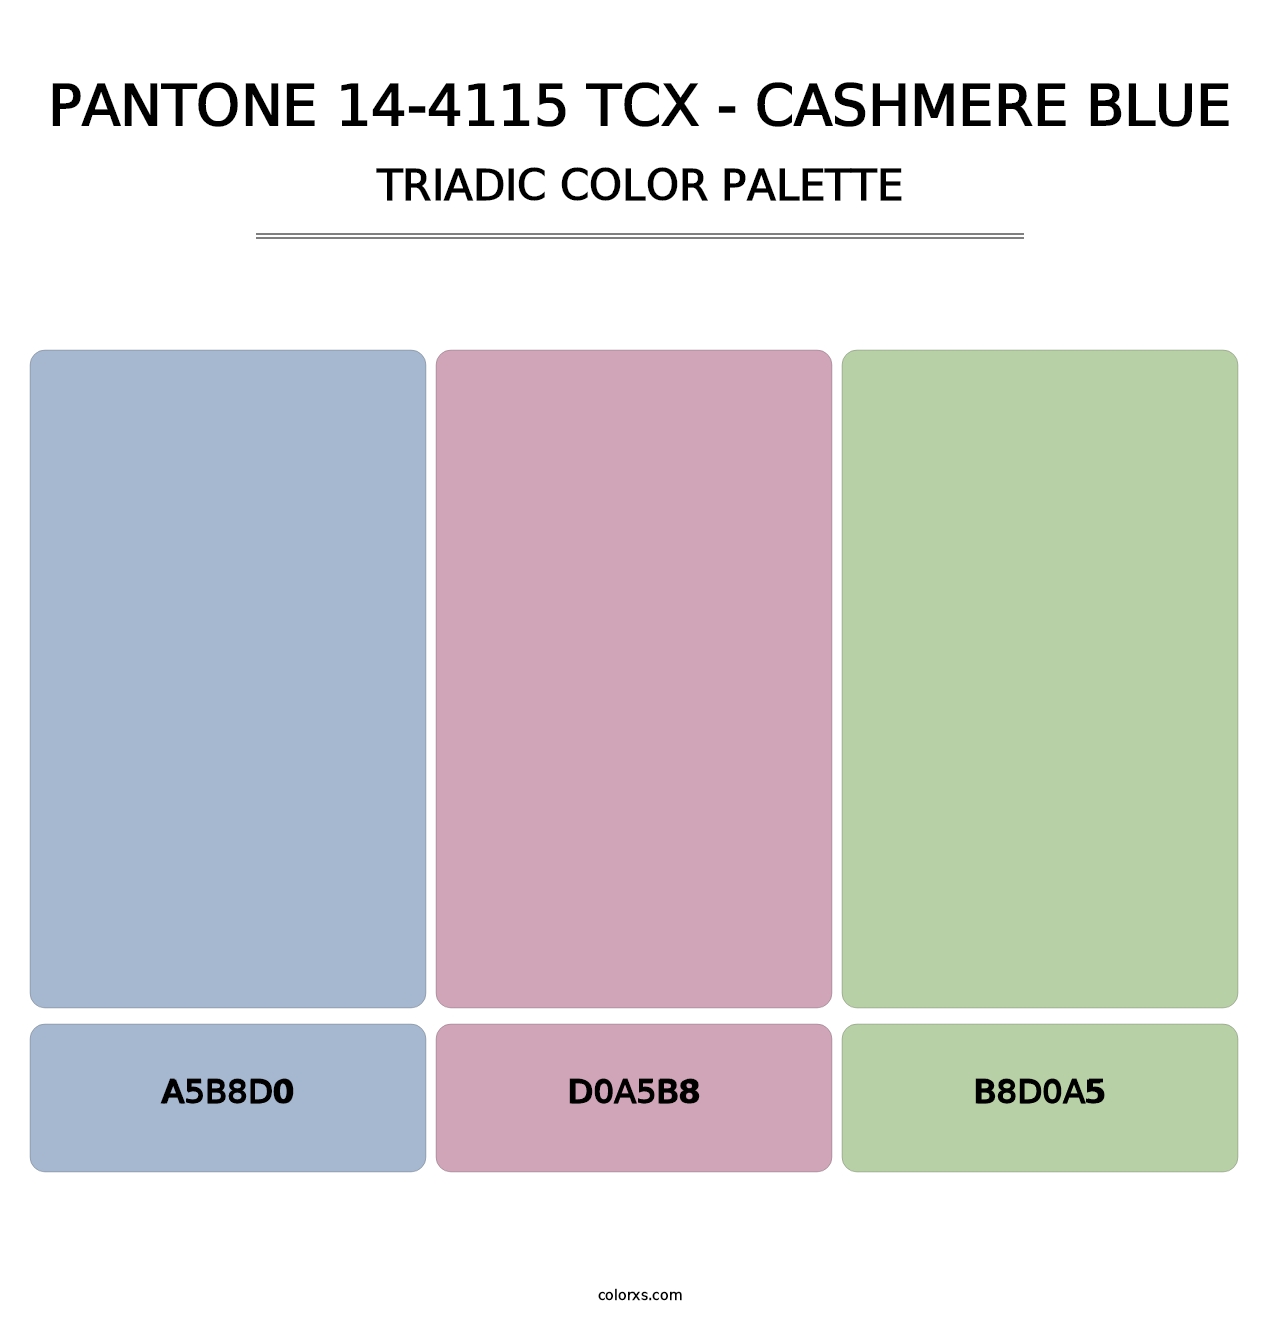 PANTONE 14-4115 TCX - Cashmere Blue - Triadic Color Palette